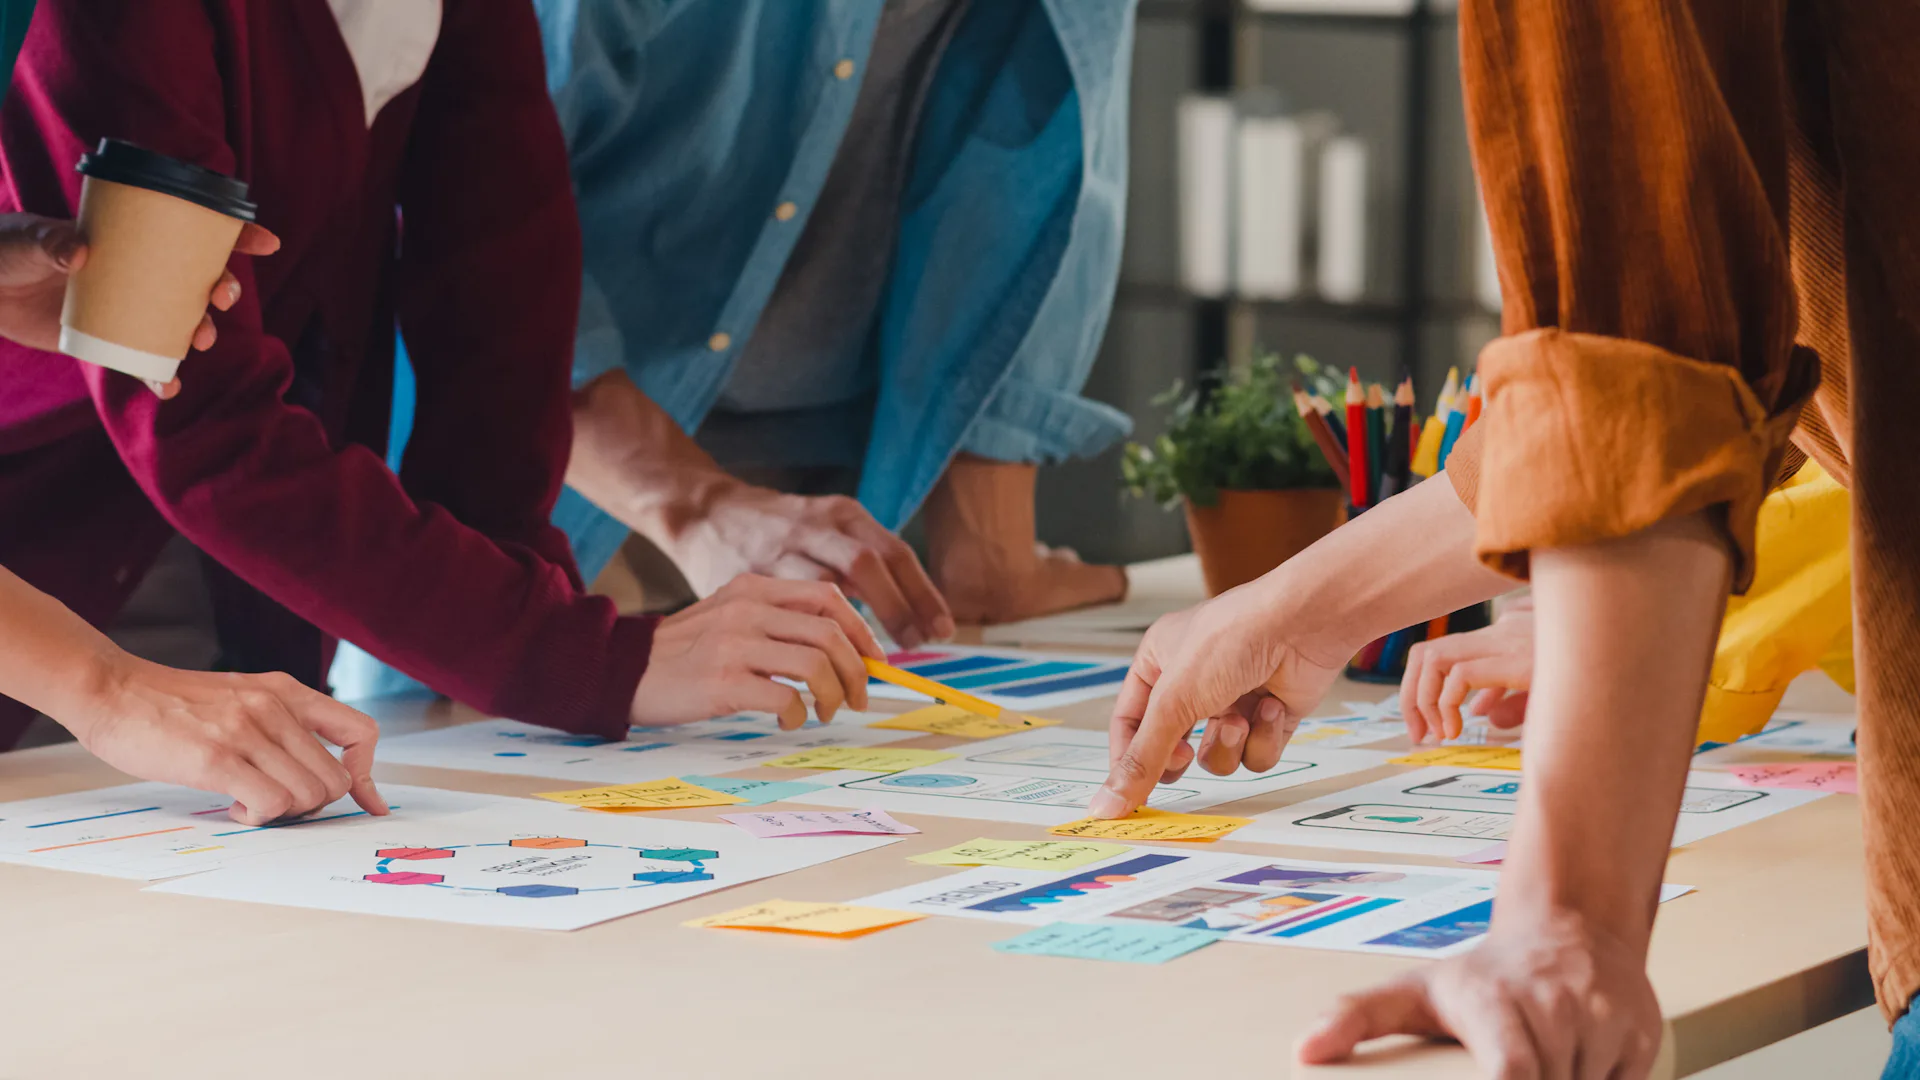 Na imagem, uma mesa com várias folhas com post its coloridos, e pessoas a volta da mesa trabalhando em um planejamento.